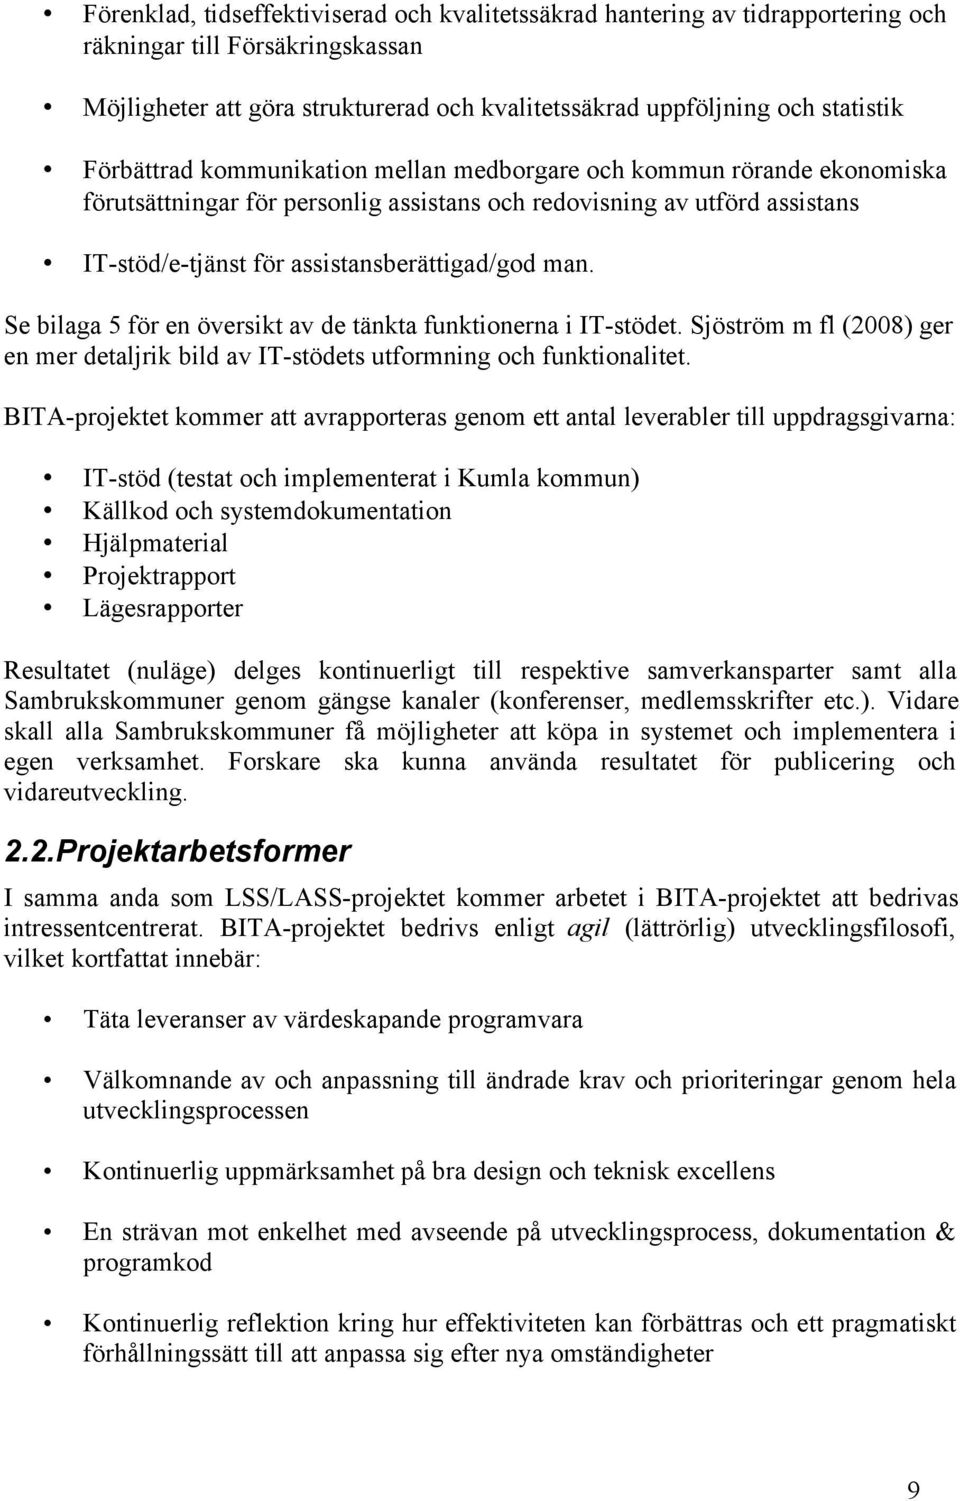 Se bilaga 5 för en översikt av de tänkta funktionerna i IT-stödet. Sjöström m fl (2008) ger en mer detaljrik bild av IT-stödets utformning och funktionalitet.